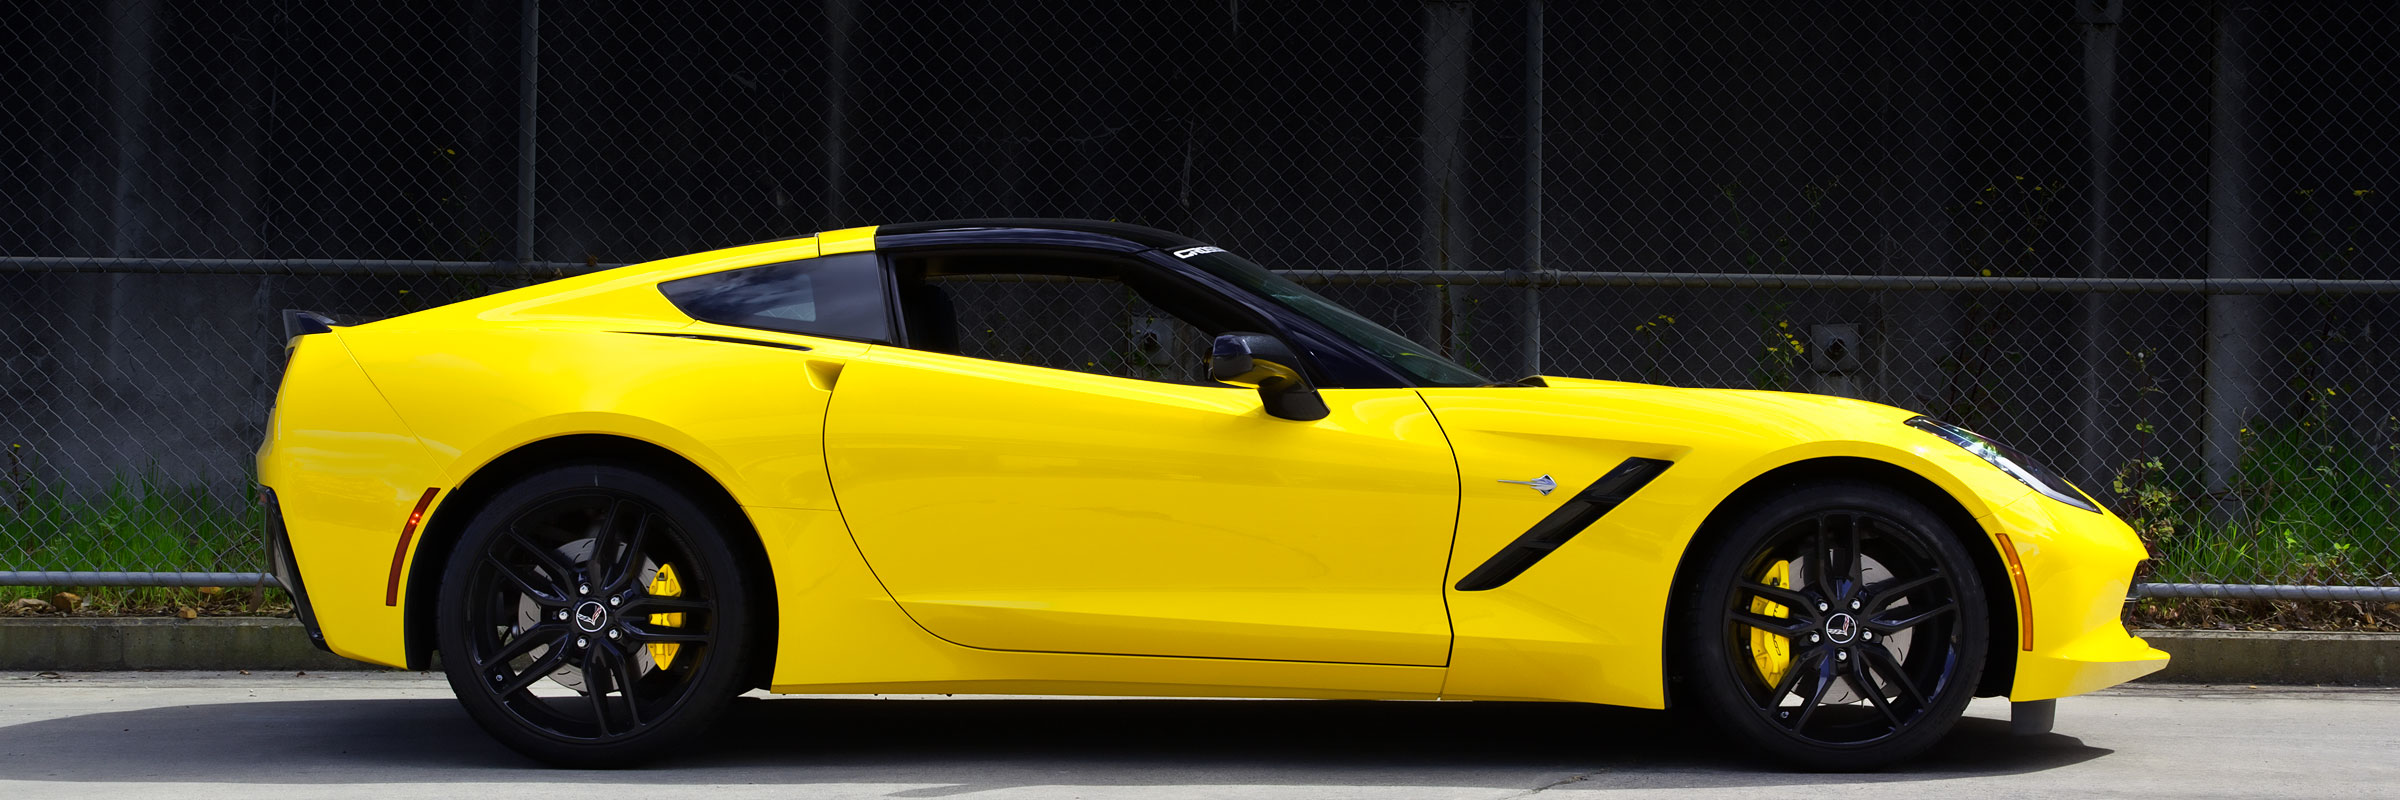 Corvette Side